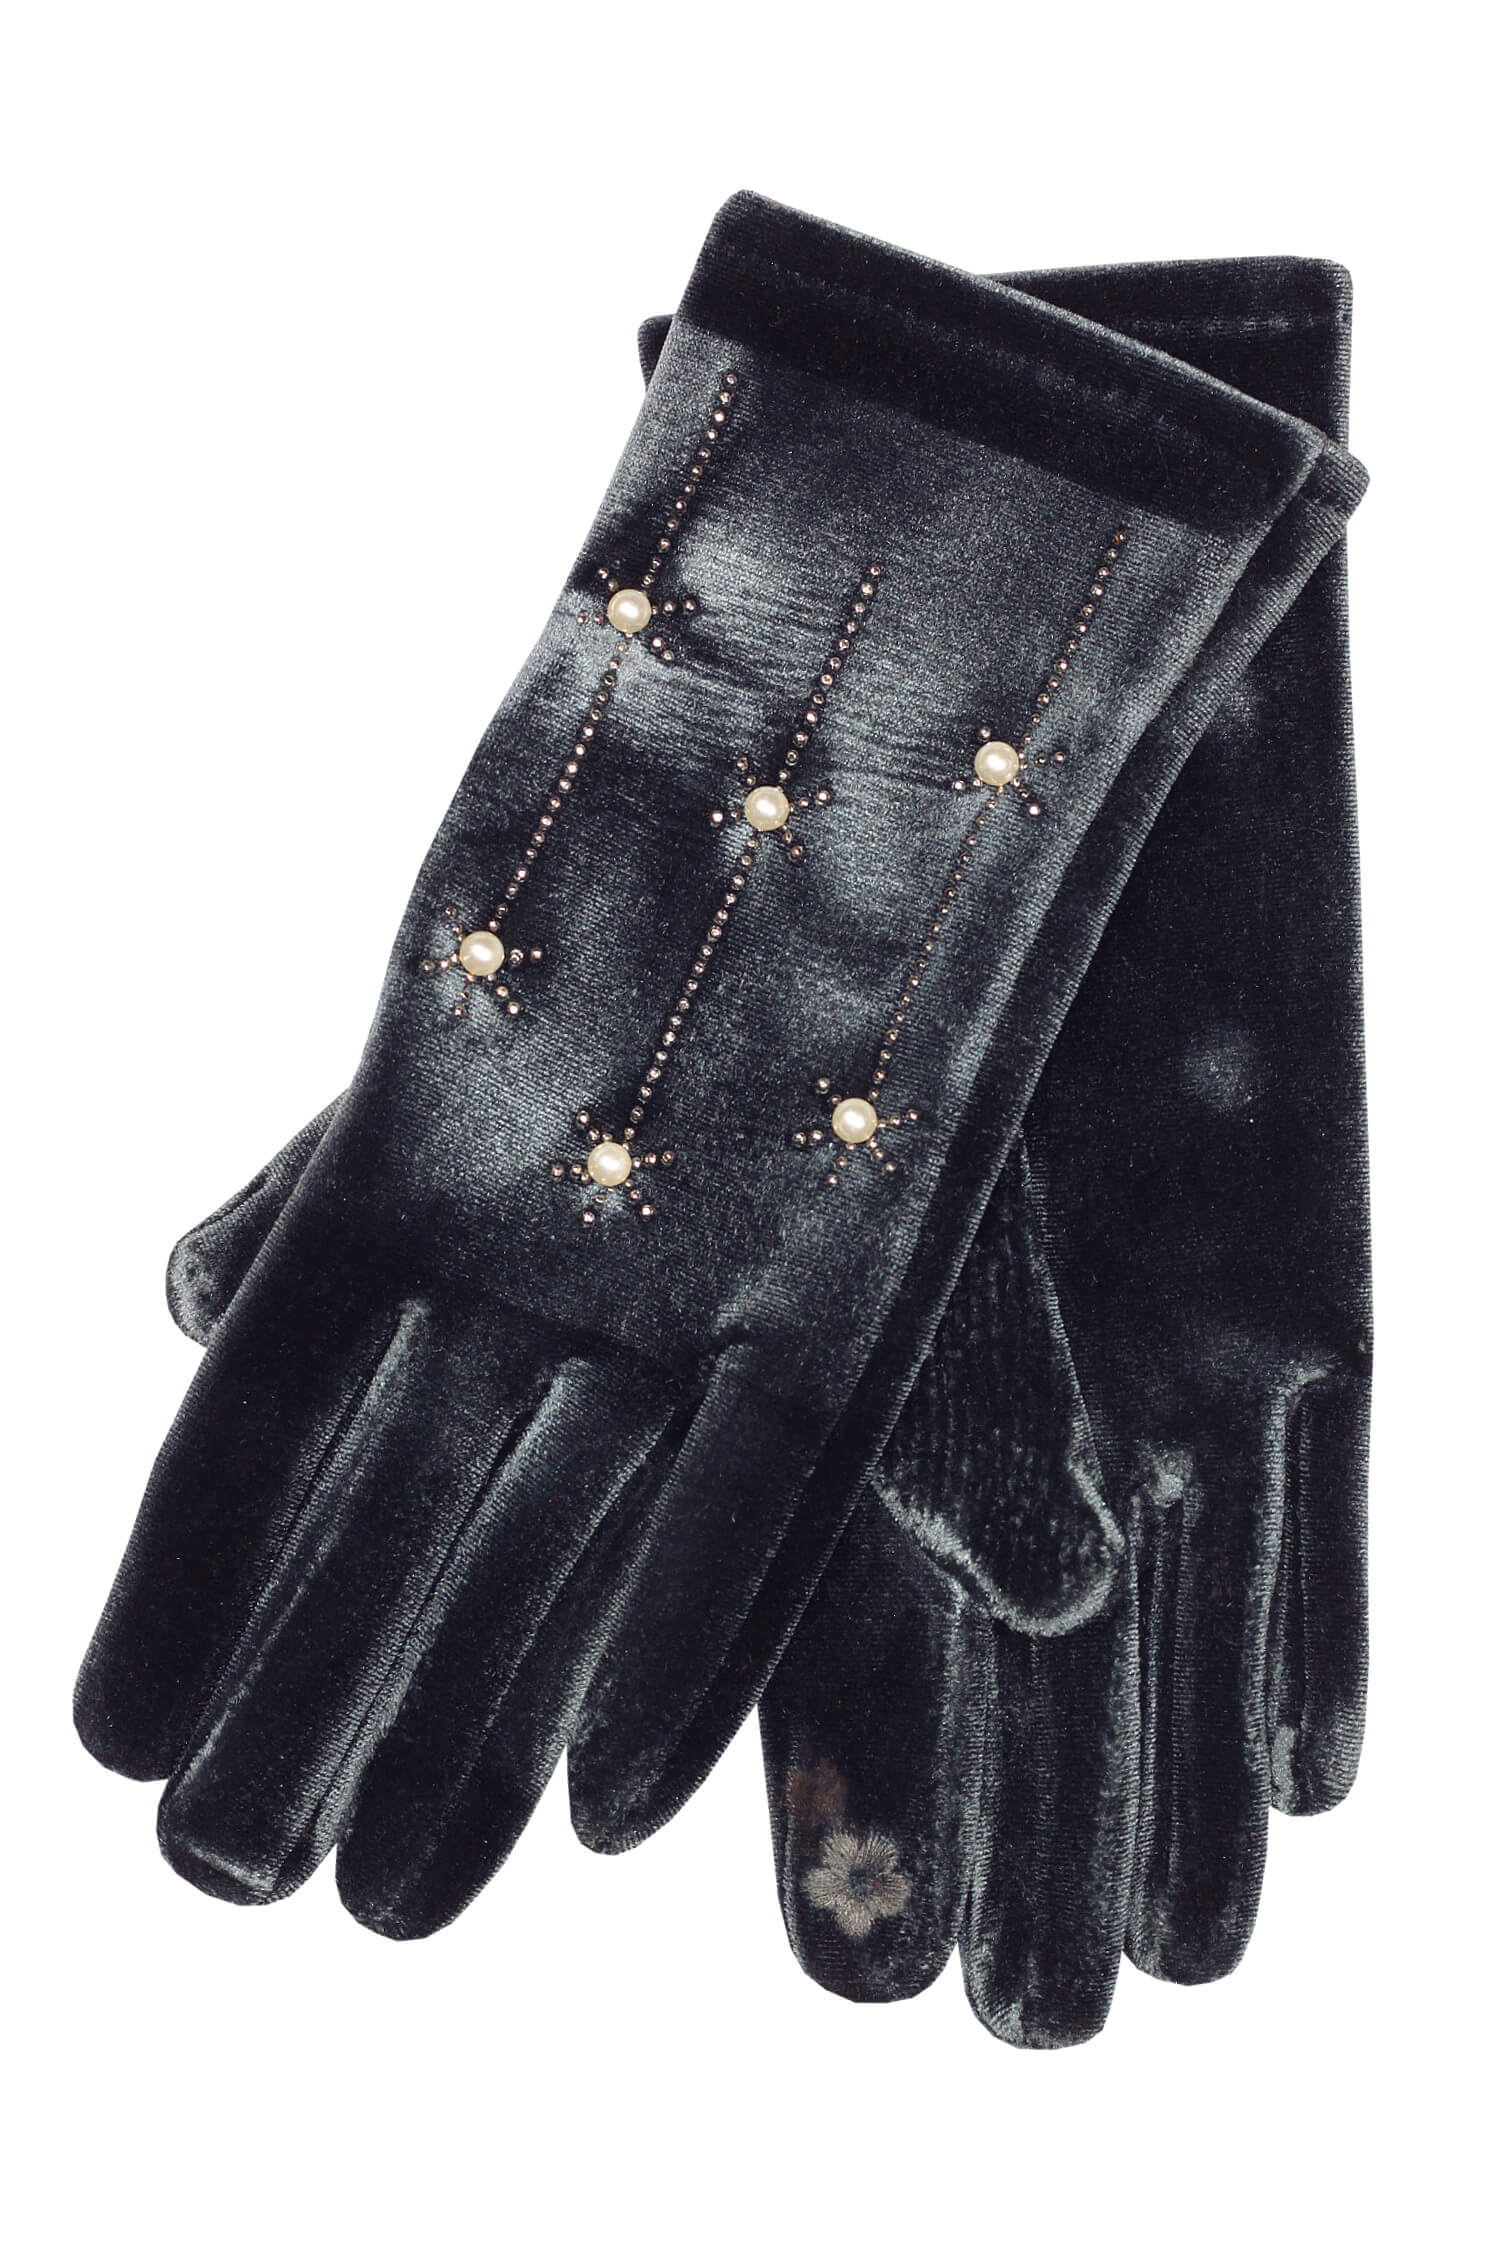 Sofia Grigia dámské rukavice na podzim L tmavě šedá